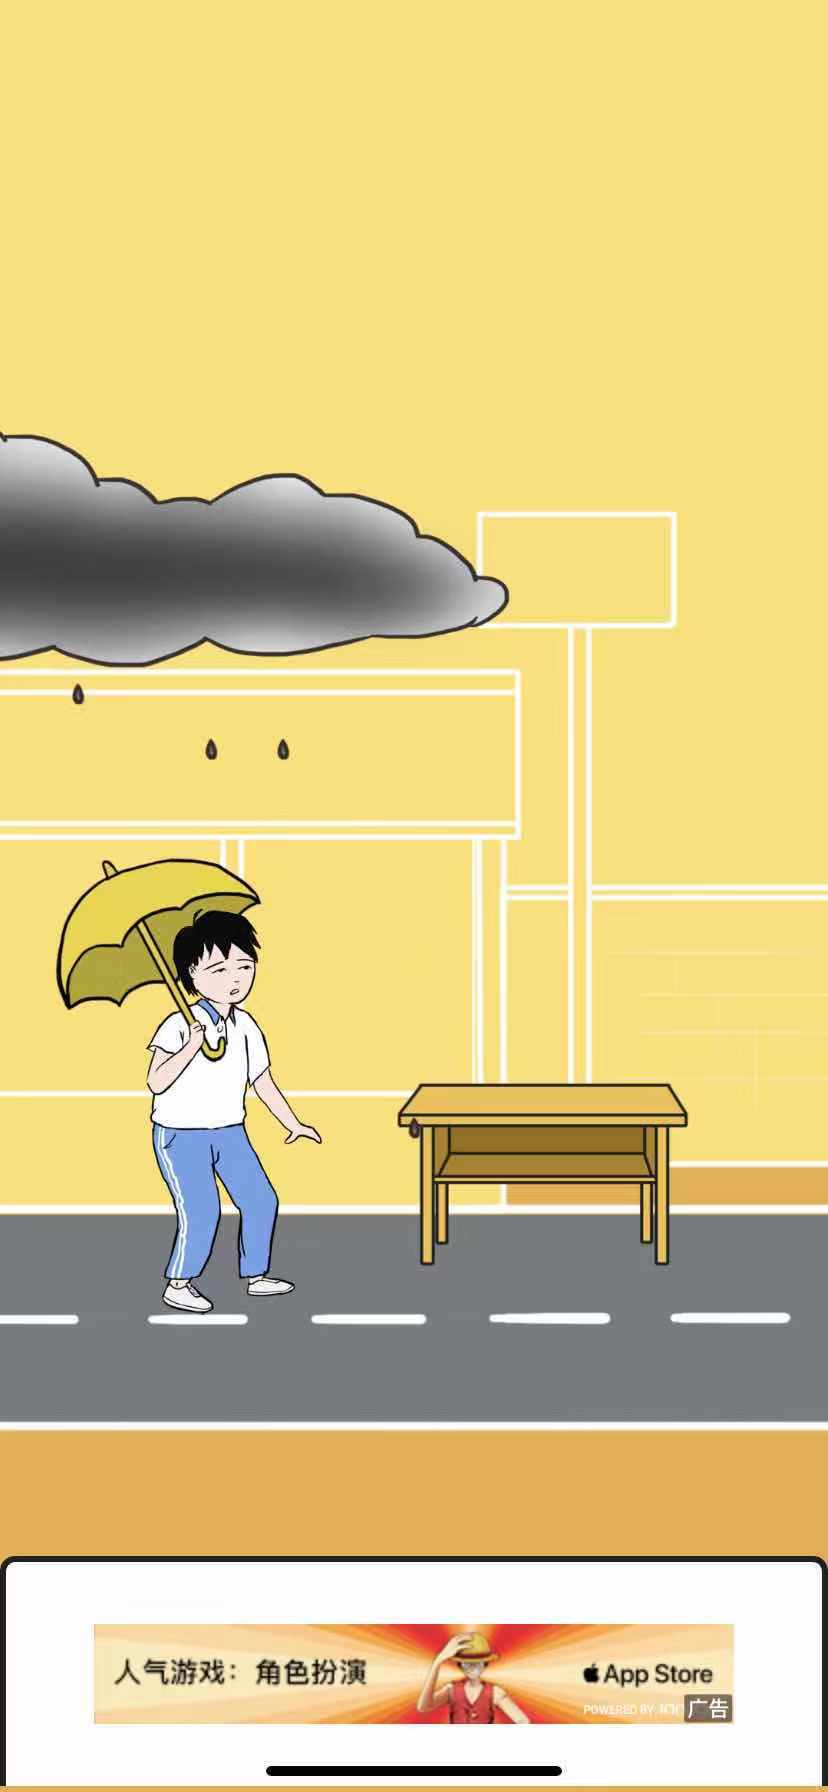 《中国式熊孩子》第1关雨天要带伞通关攻略